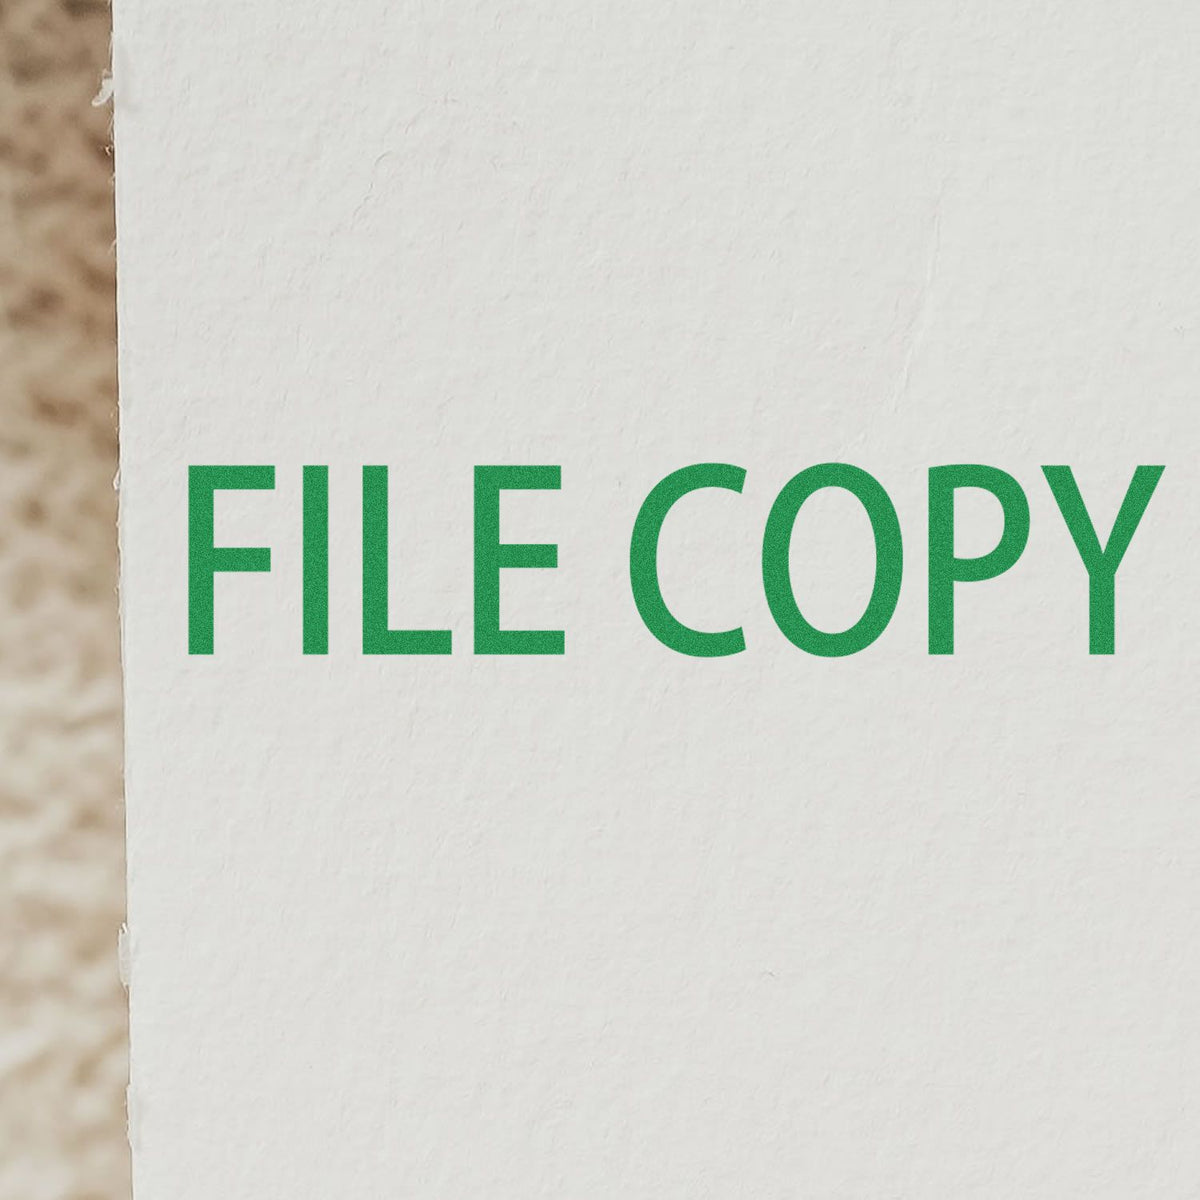 Slim Pre Inked File Copy Stamp In Use